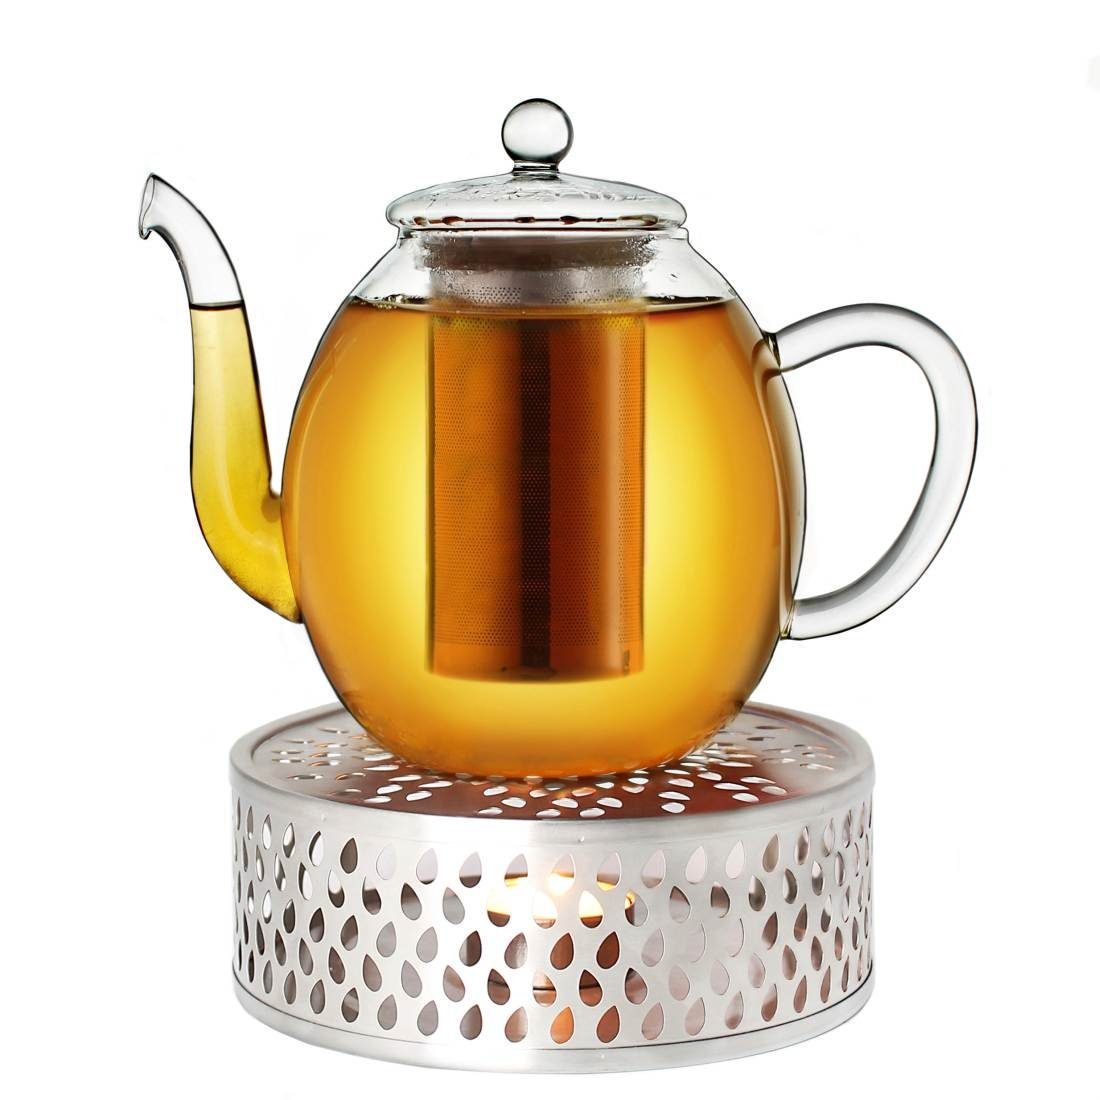 aus aus Teekanne Glas Creano (Set) Edelstahl, Creano l, + 1,0l 3-teilige, Teekanne Stövchen ein 1